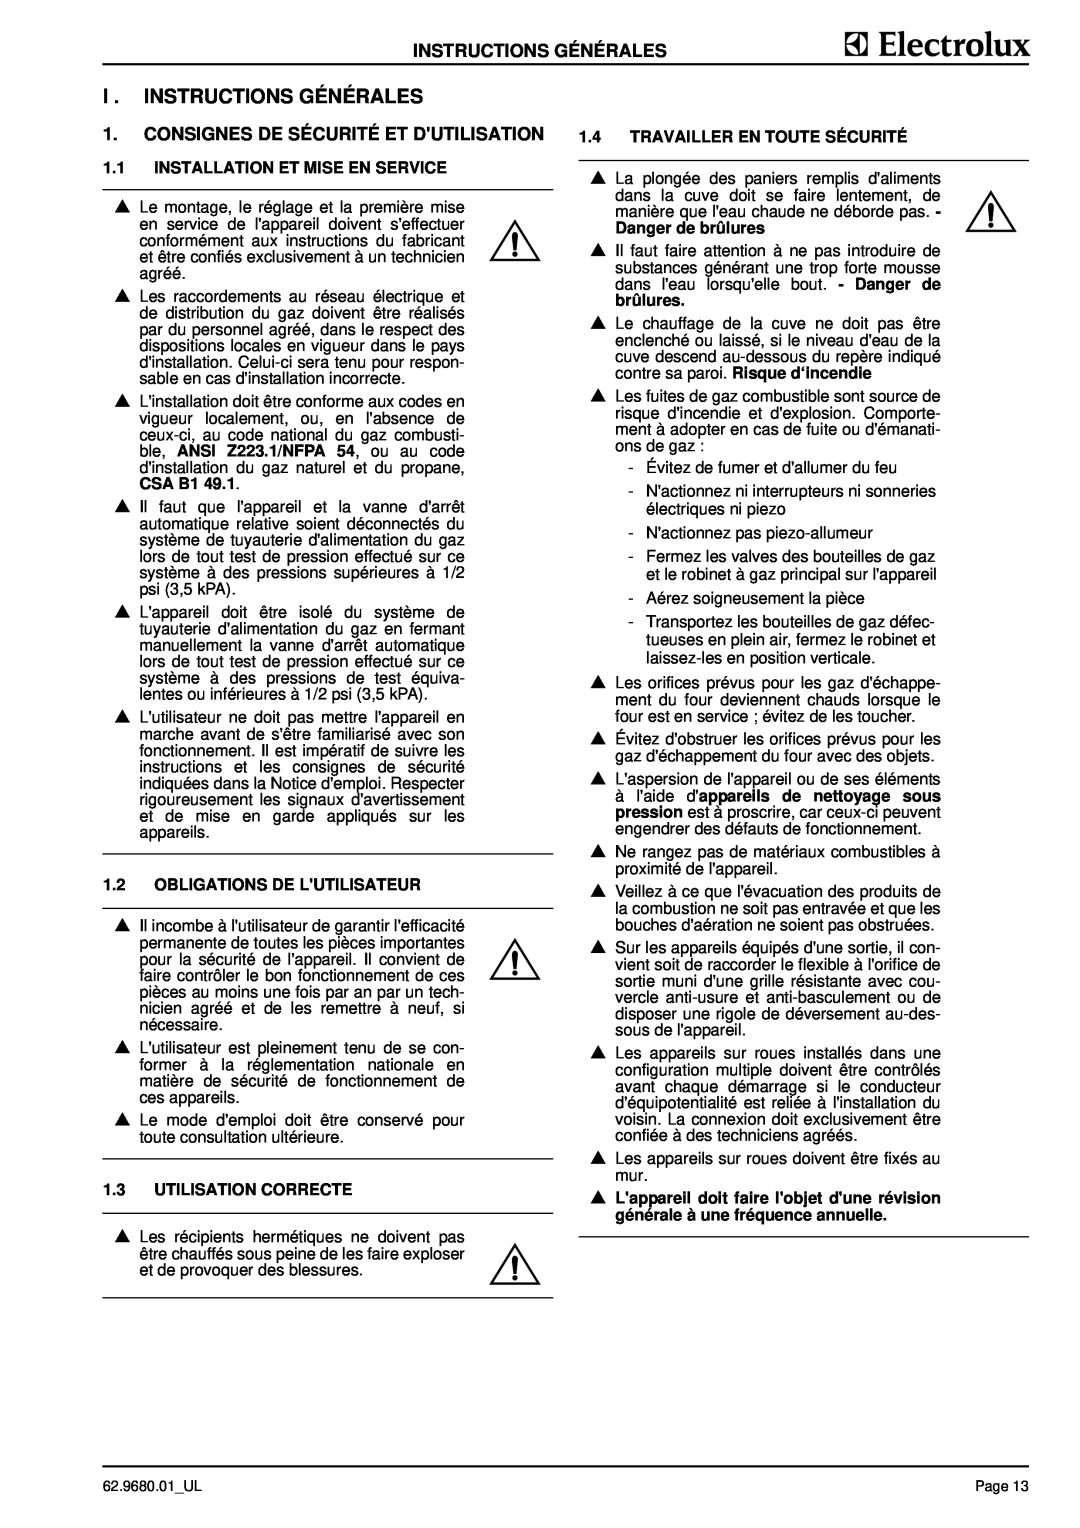 Electrolux 9CHG584139 I . Instructions Générales, Consignes De Sécurité Et Dutilisation, 1.2OBLIGATIONS DE LUTILISATEUR 